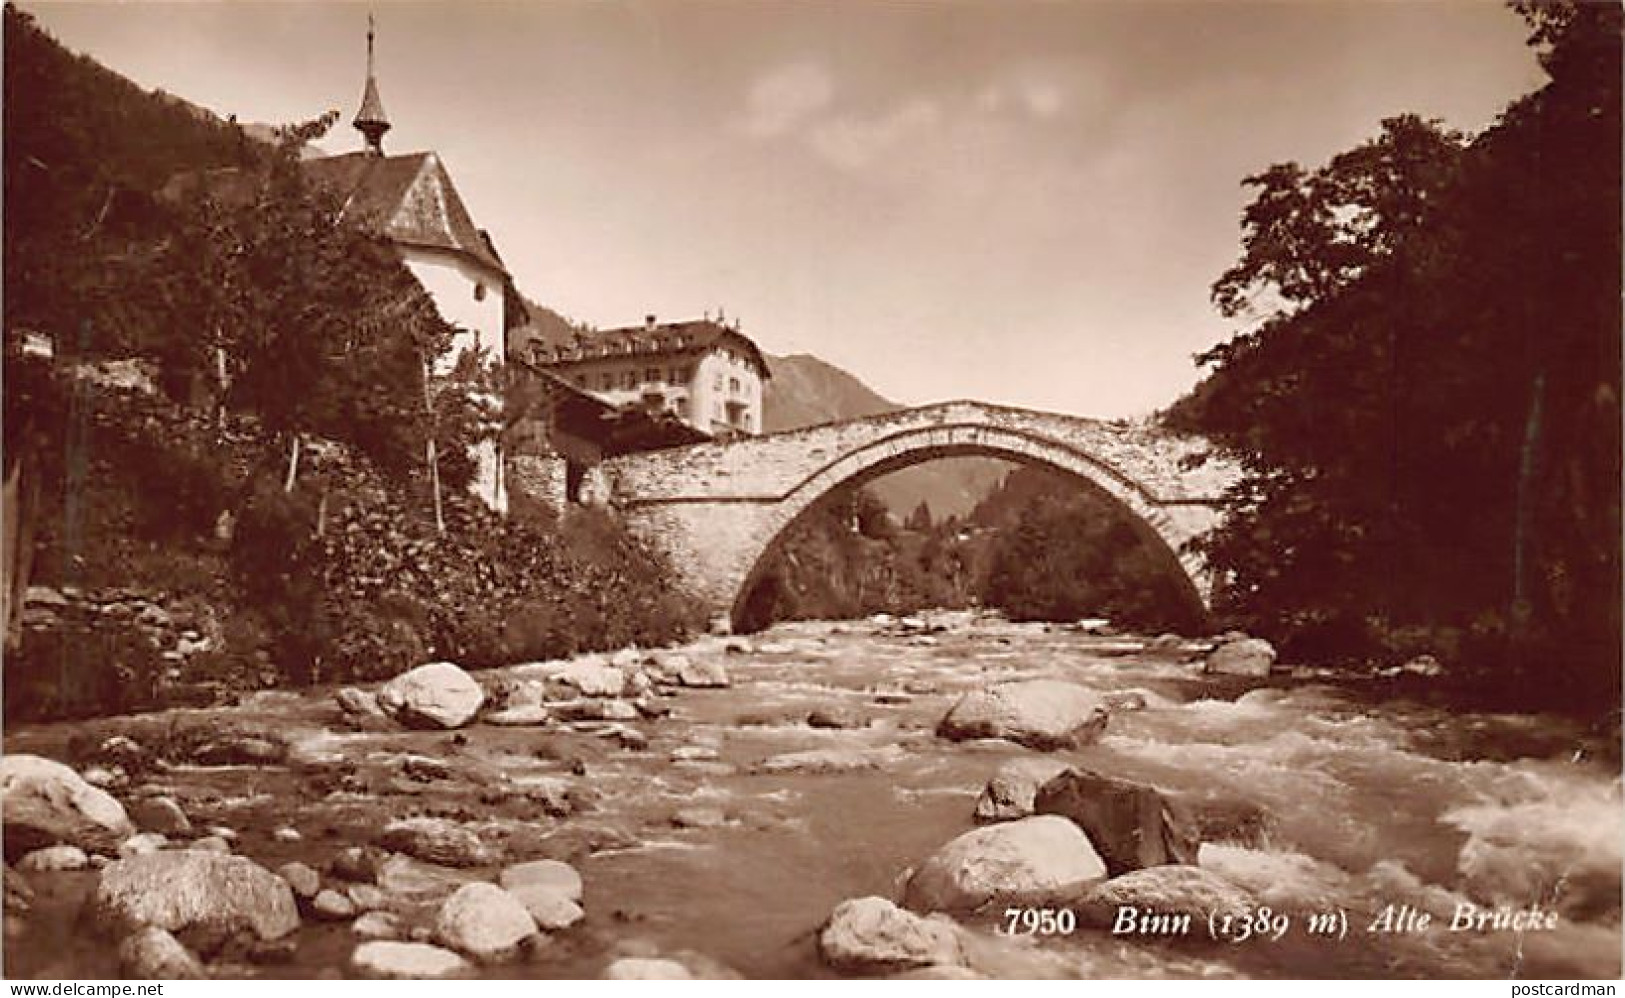 BINN (VS) Alte Brücke - Verlag C.P.N. 7950 - Binn